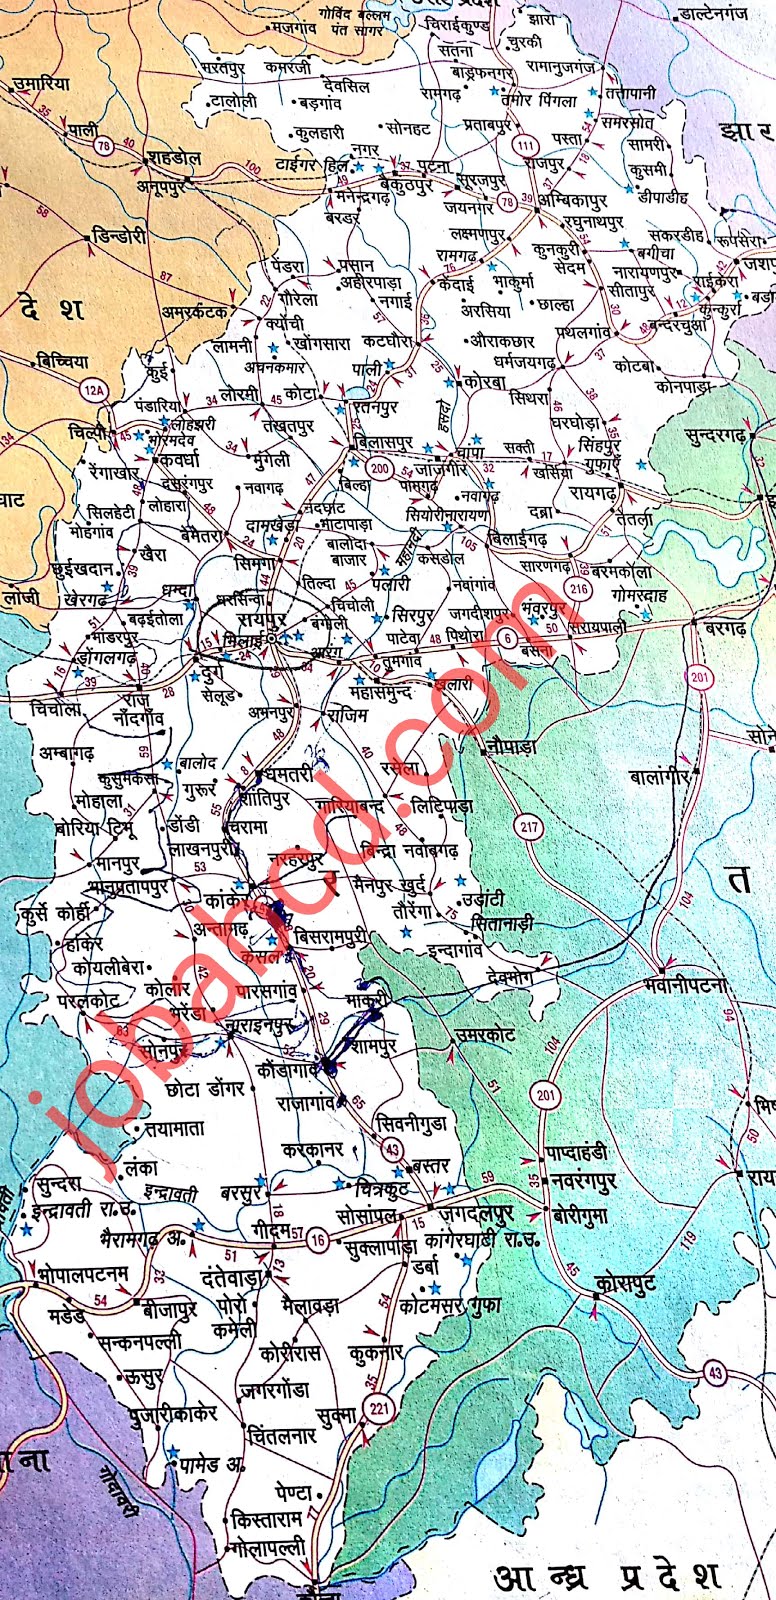 chhattisgarh state map (छत्तीसगढ़ राज्य मैप ) upsc